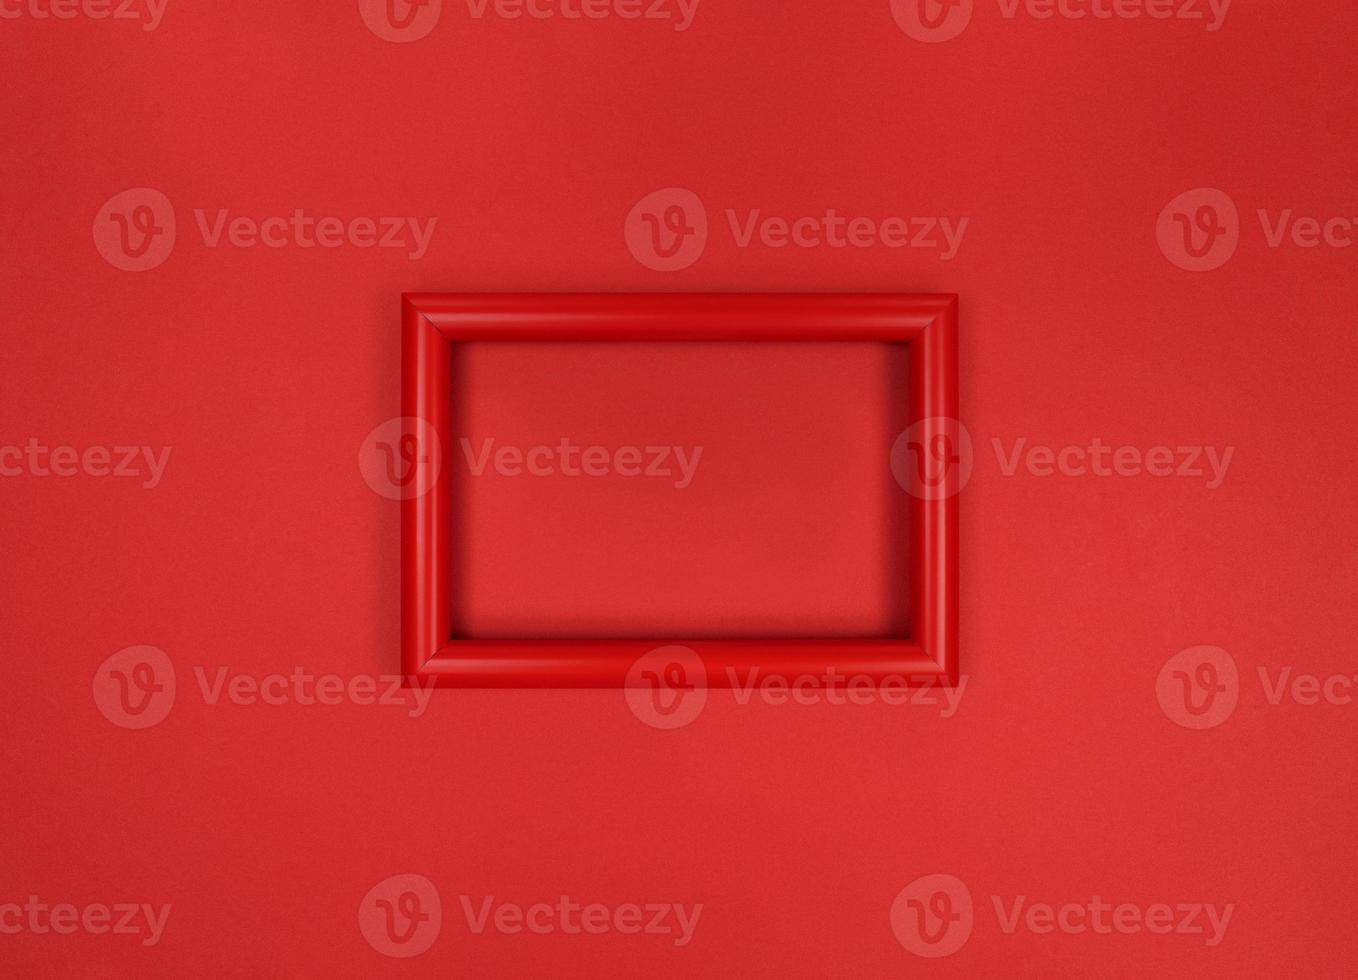 cornice sul muro, foto monocromatica rossa minimalista.